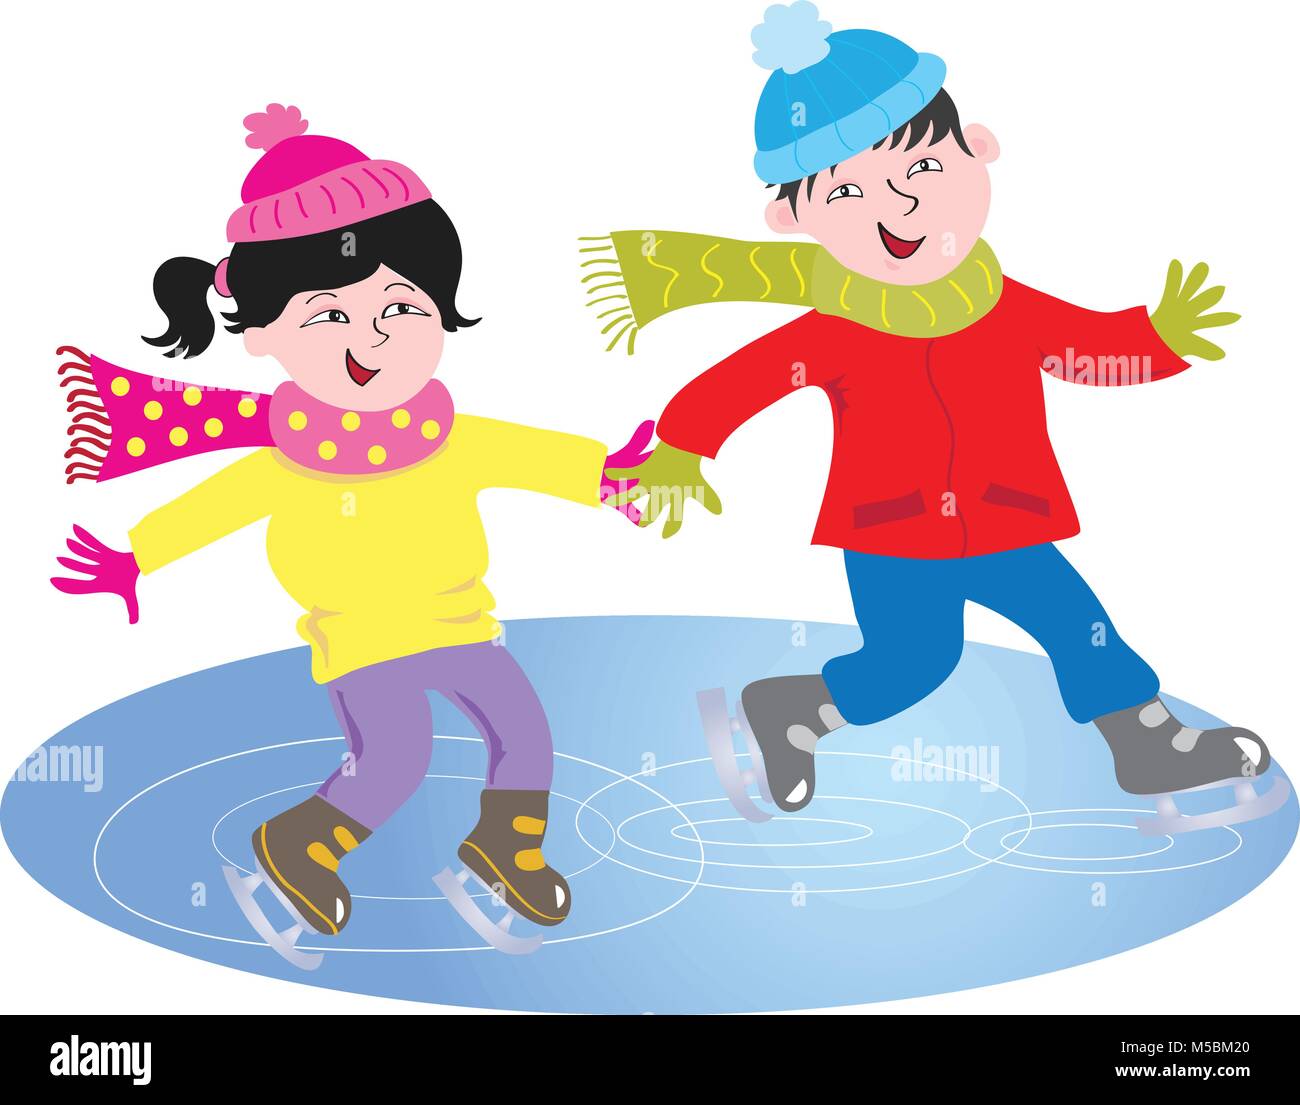 Deux enfants de dessin animé avec des traits asiatiques patinant sur un lac gelé Illustration de Vecteur